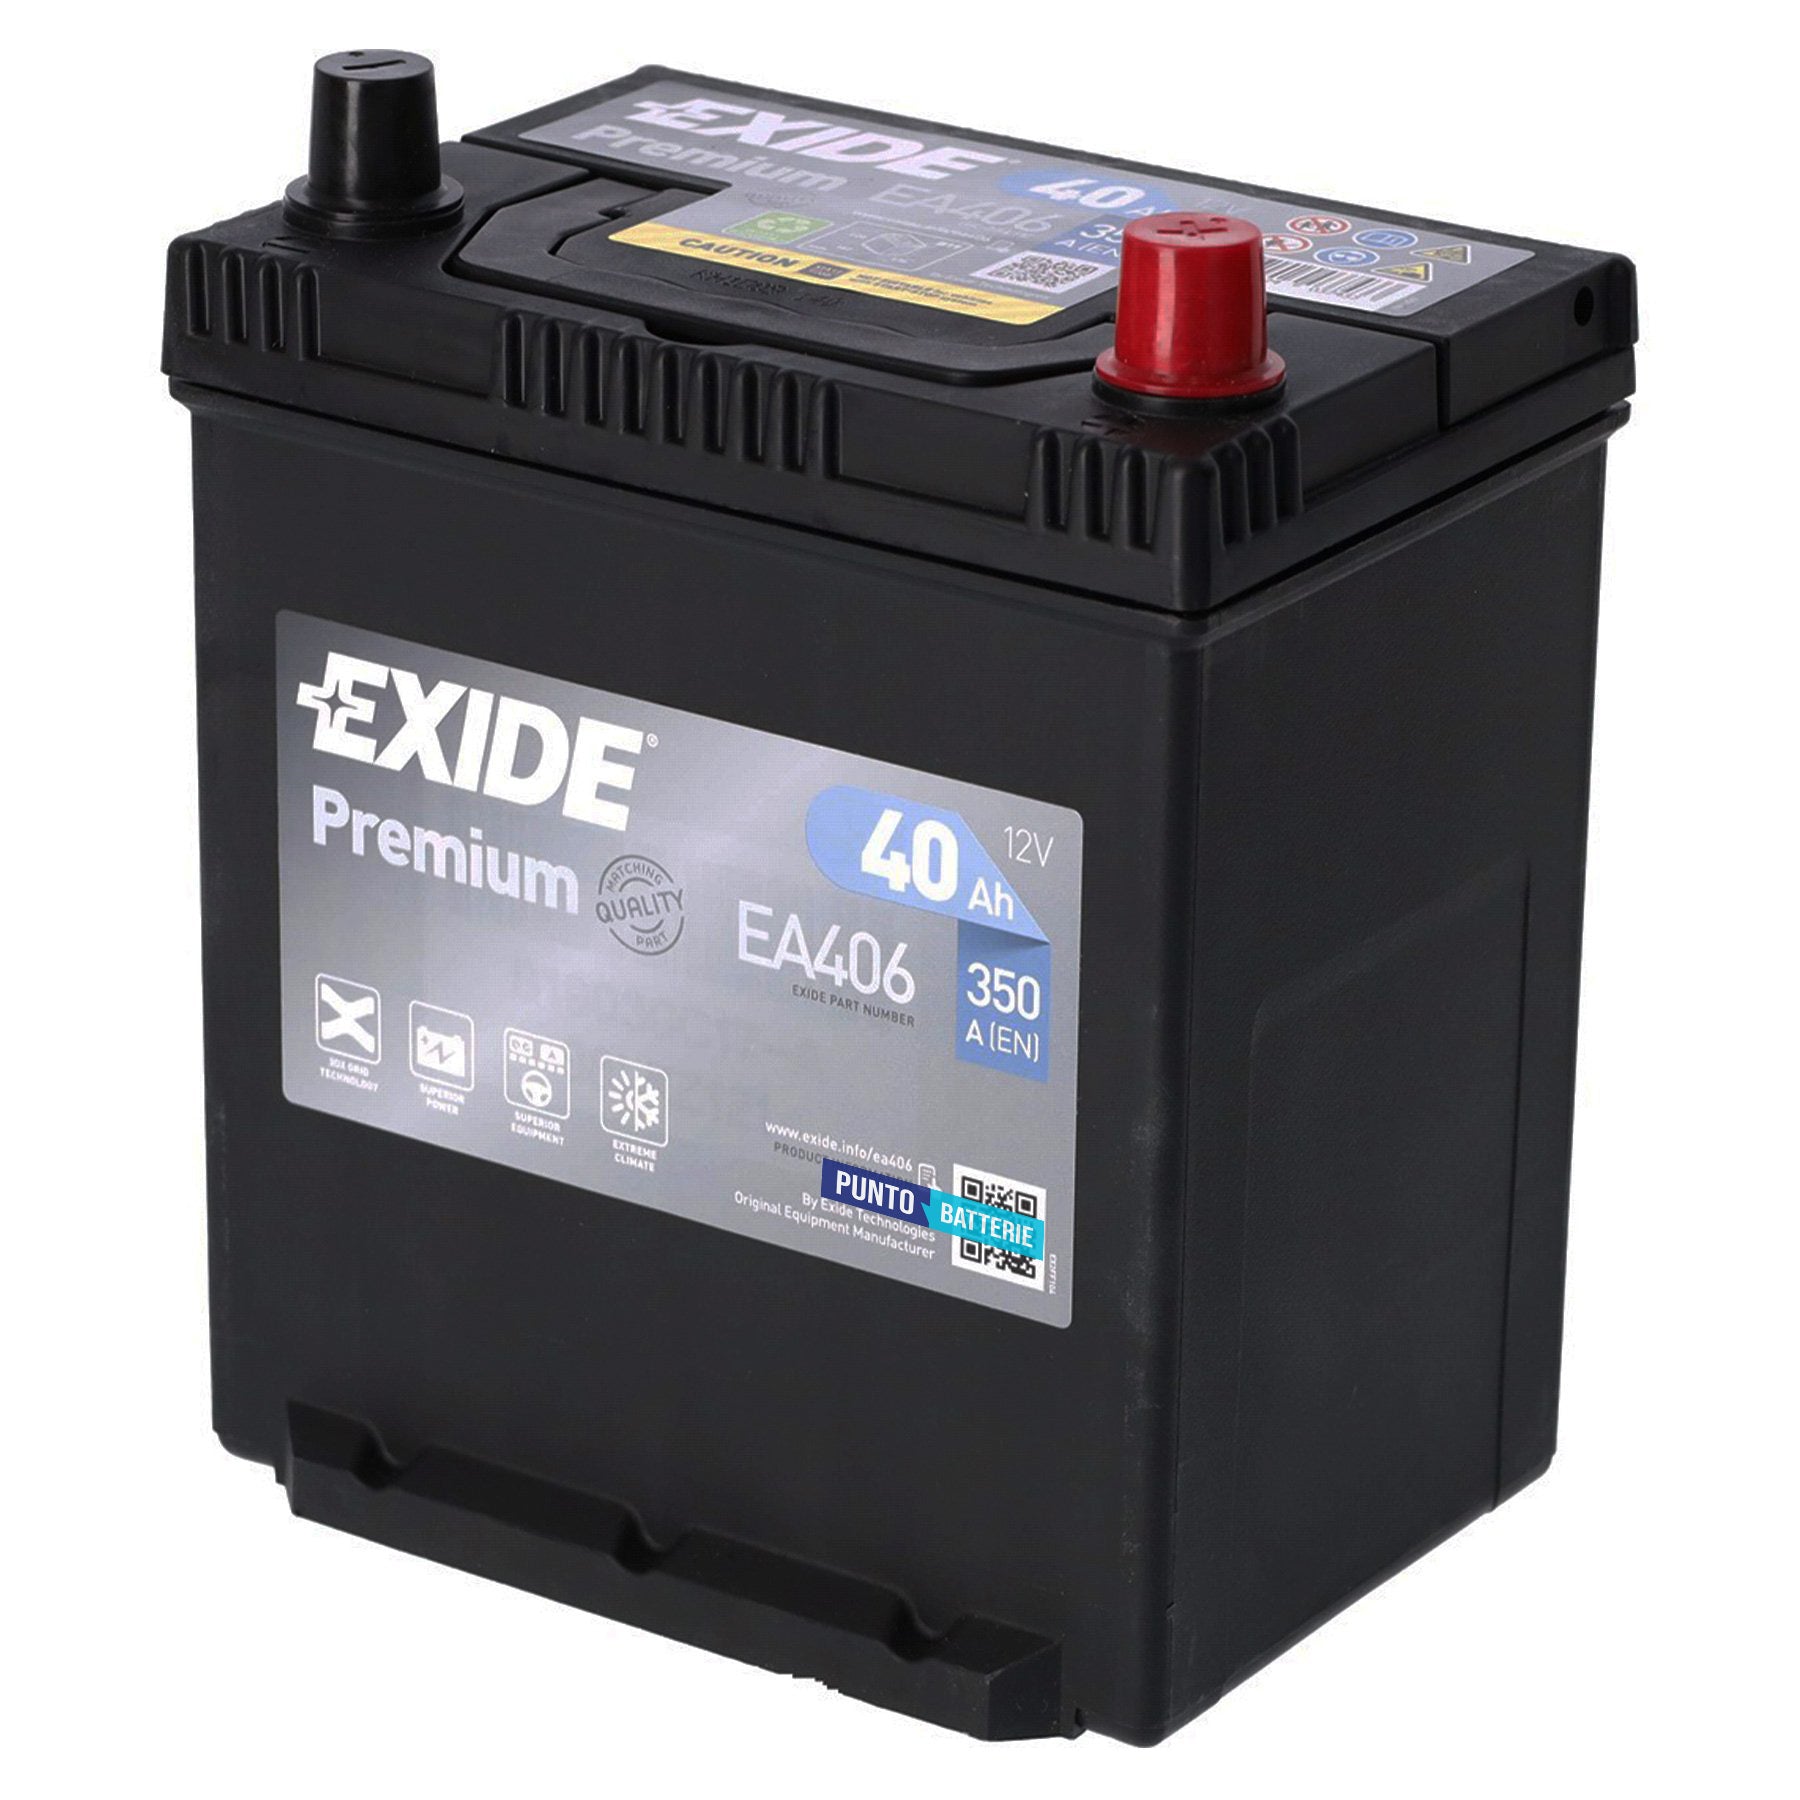 Batteria originale Exide Premium EA406, dimensioni 187 x 127 x 220, polo positivo a destra, 12 volt, 40 amperora, 350 ampere. Batteria per auto e veicoli leggeri.